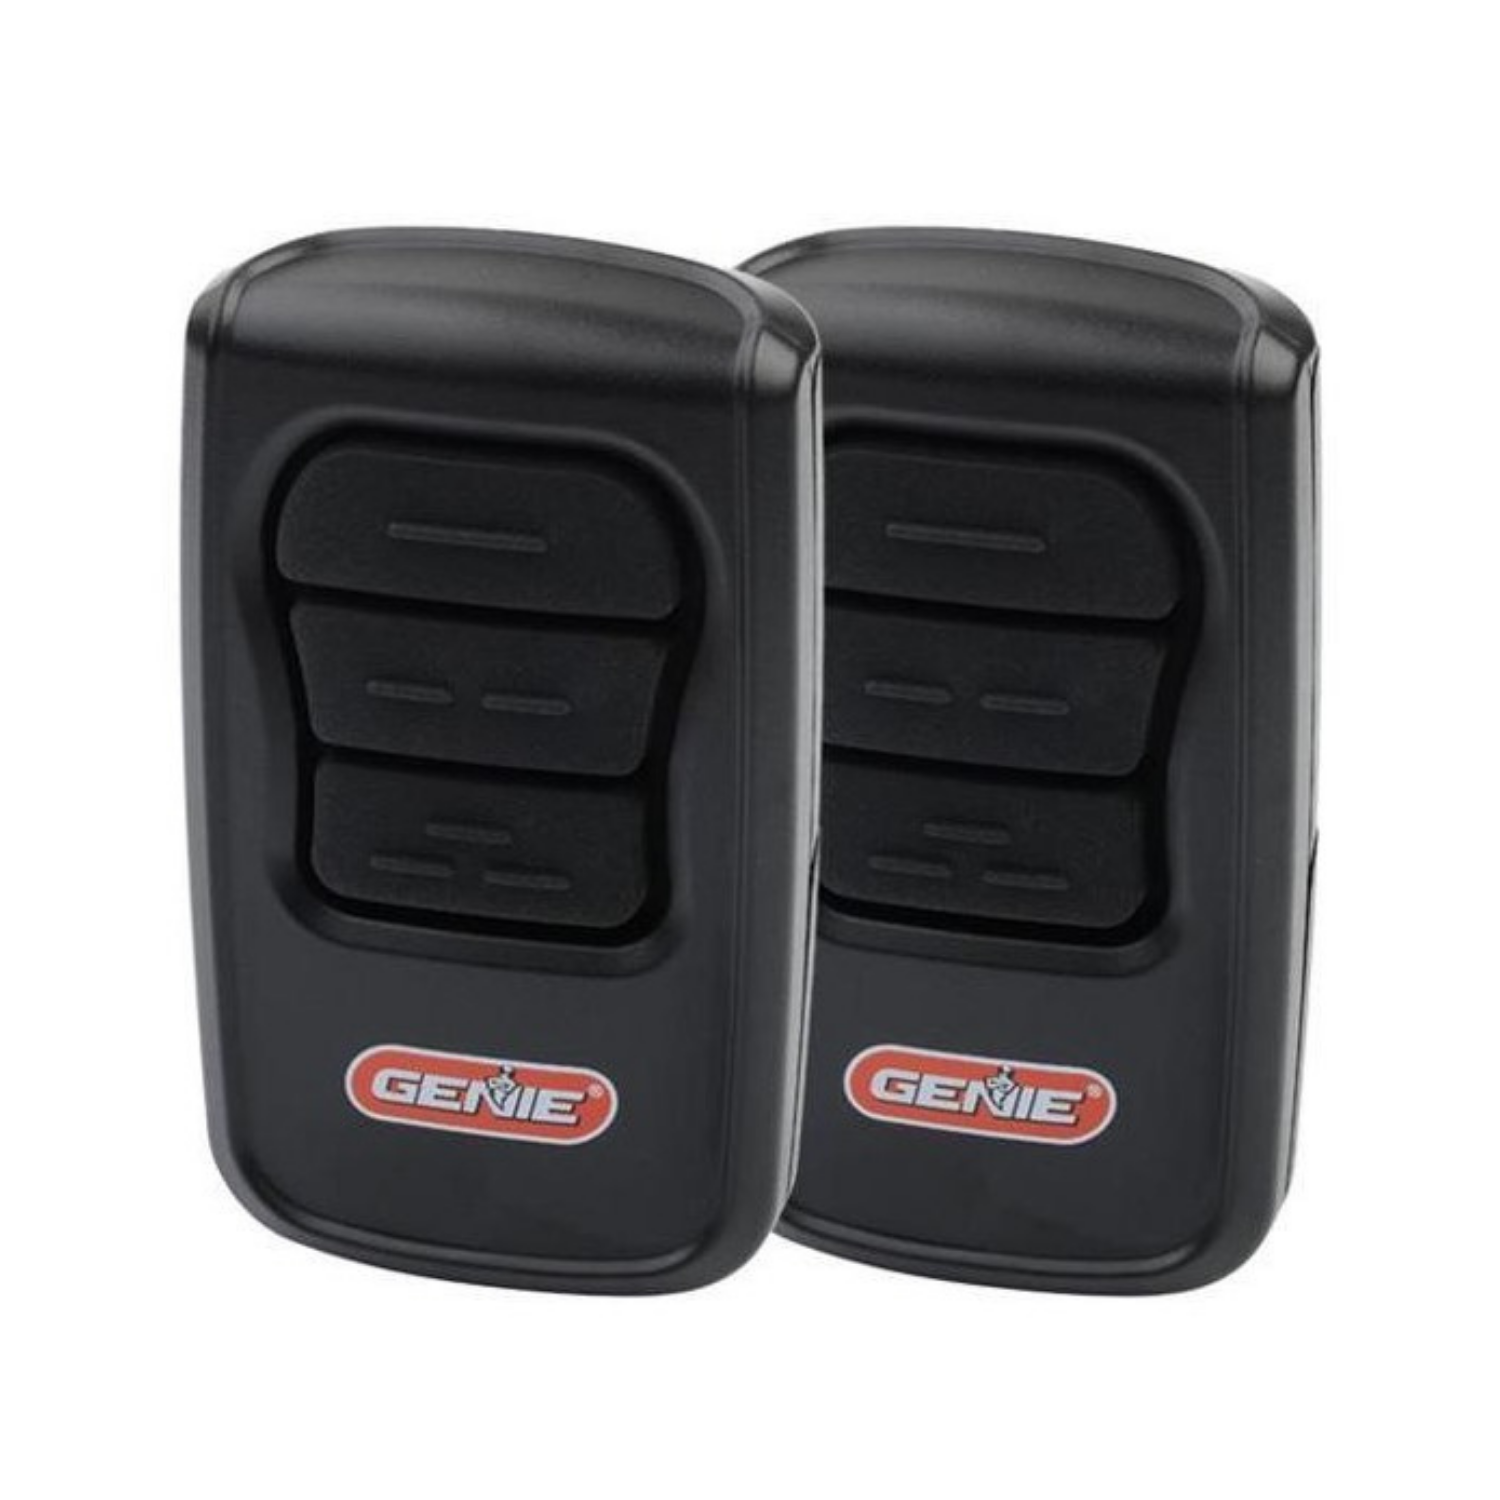 3-Button Genie Master® Garage Door Opener Remotes (2 Pack) – The